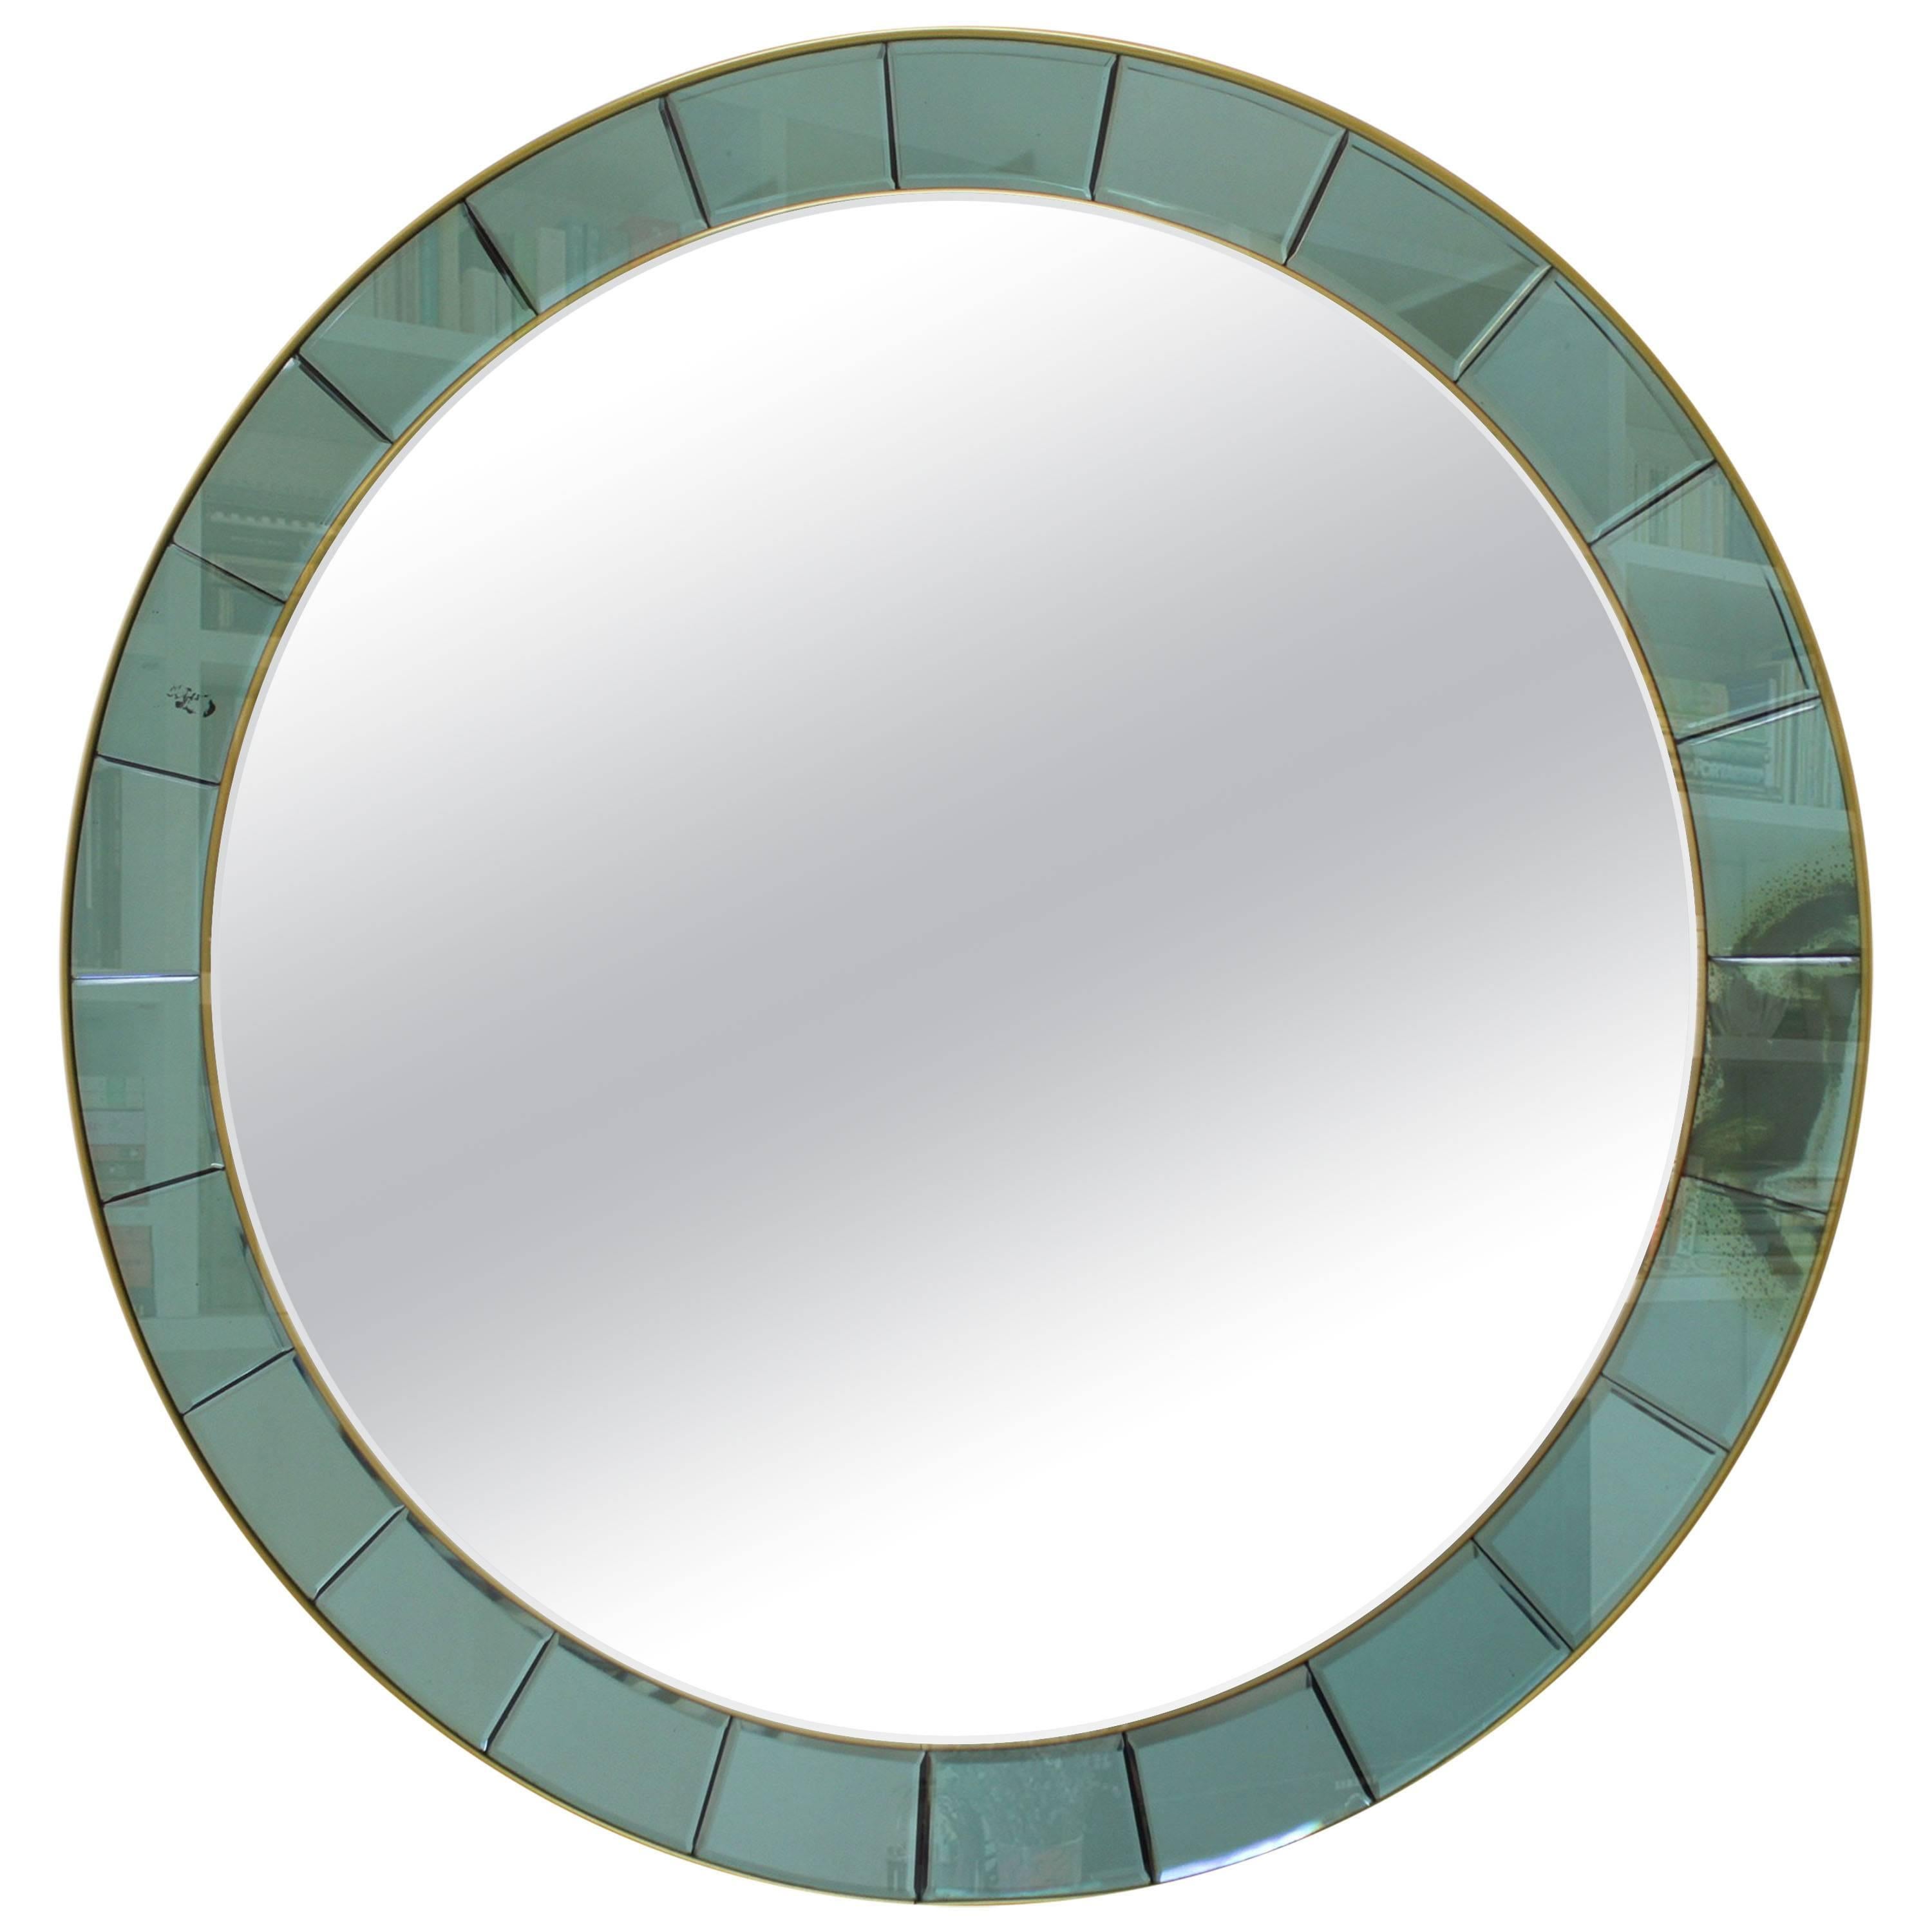 Cristal Art Round Mirror